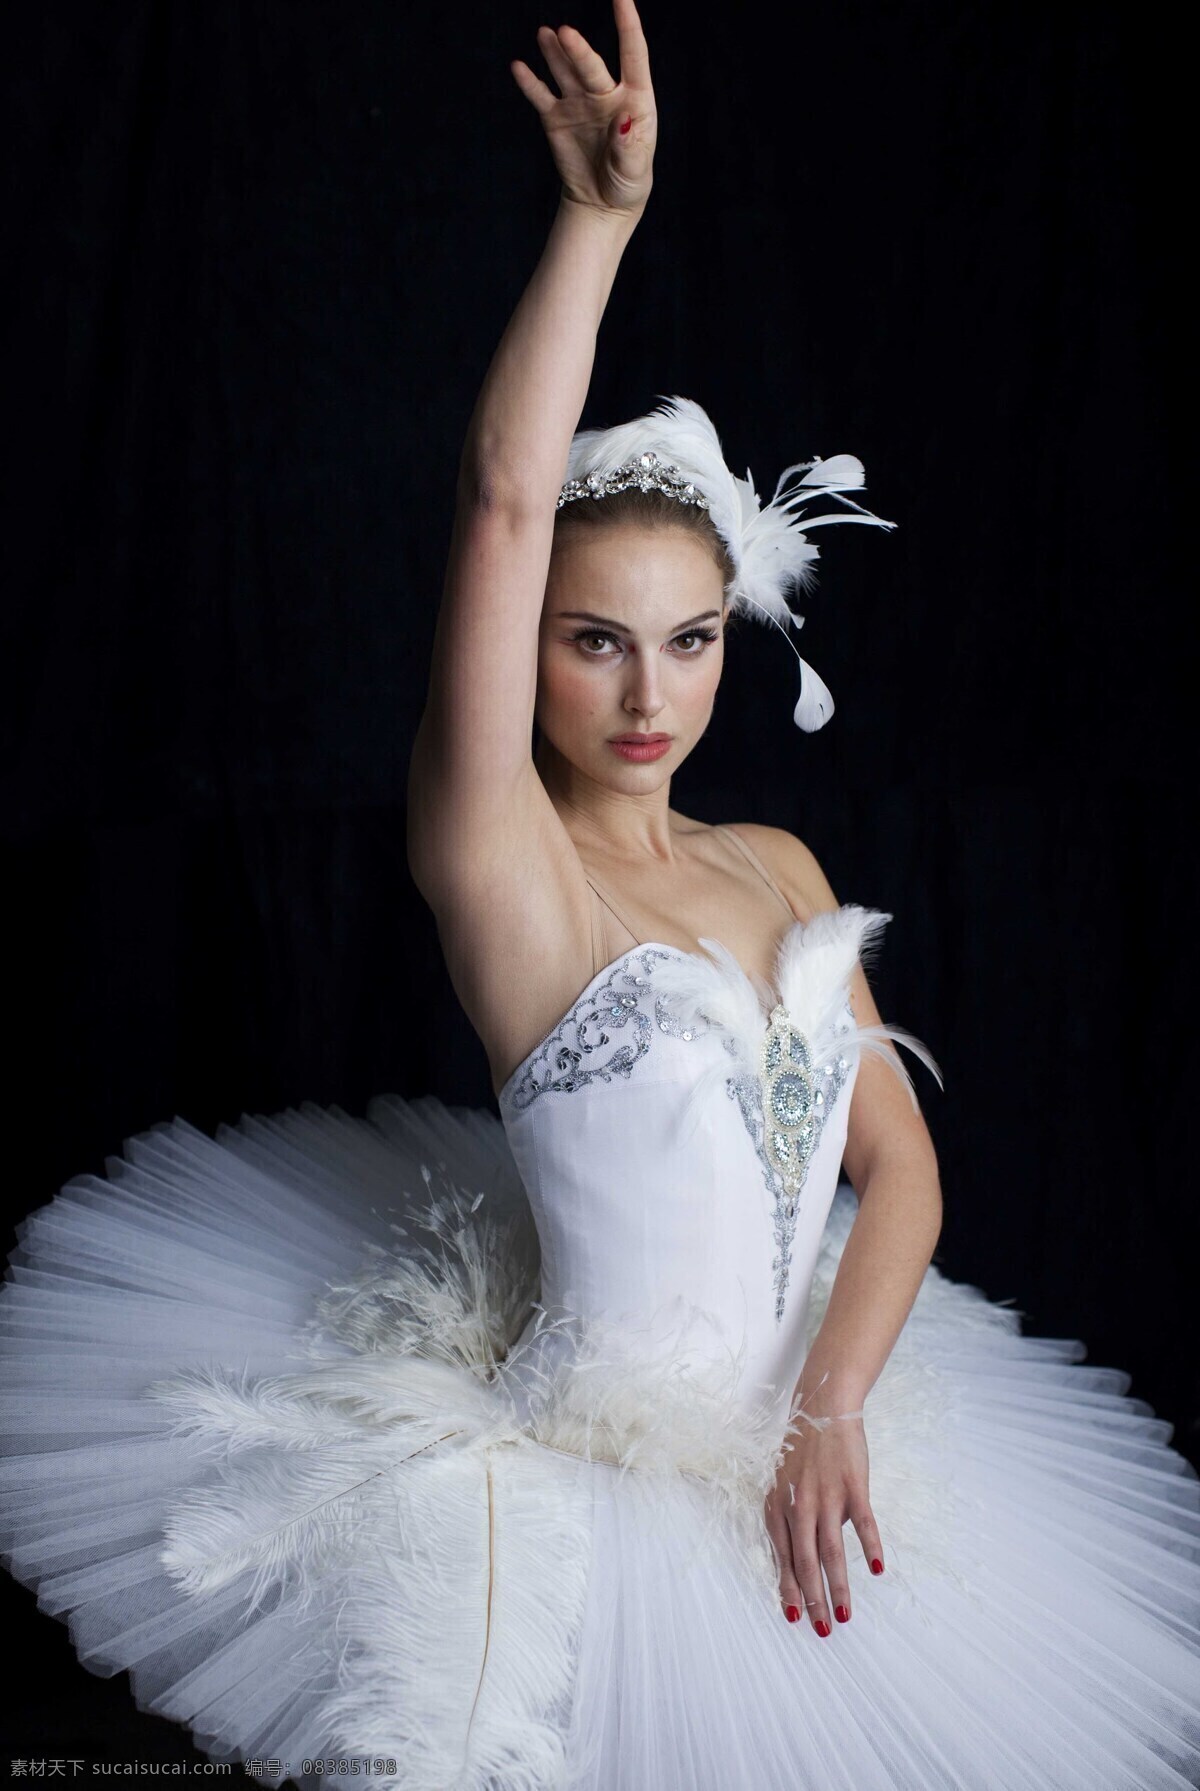 娜塔莉 波特曼 艺术写真 唯美 美女 美女摄影 芭蕾舞 舞蹈 黑天鹅 羽毛 明星偶像 人物图库